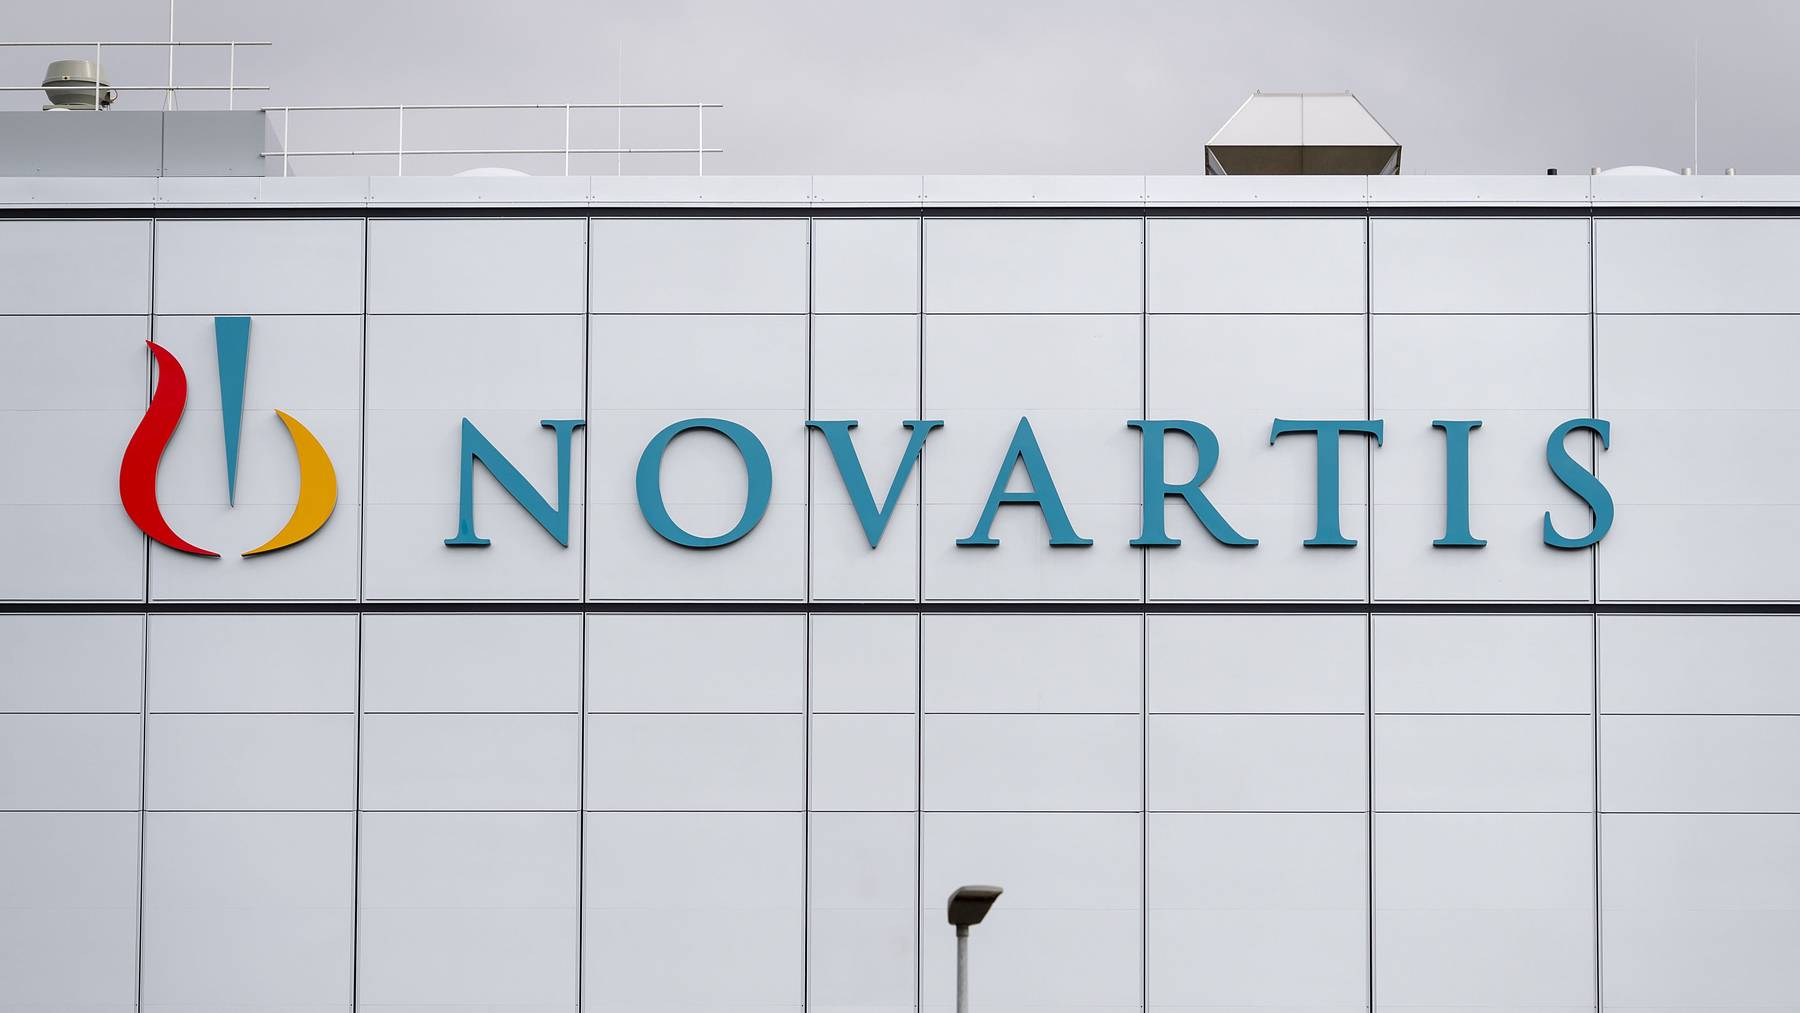 Der weltweit tätige Pharmakonzern Novartis hat seinen Hauptsitz in Basel.